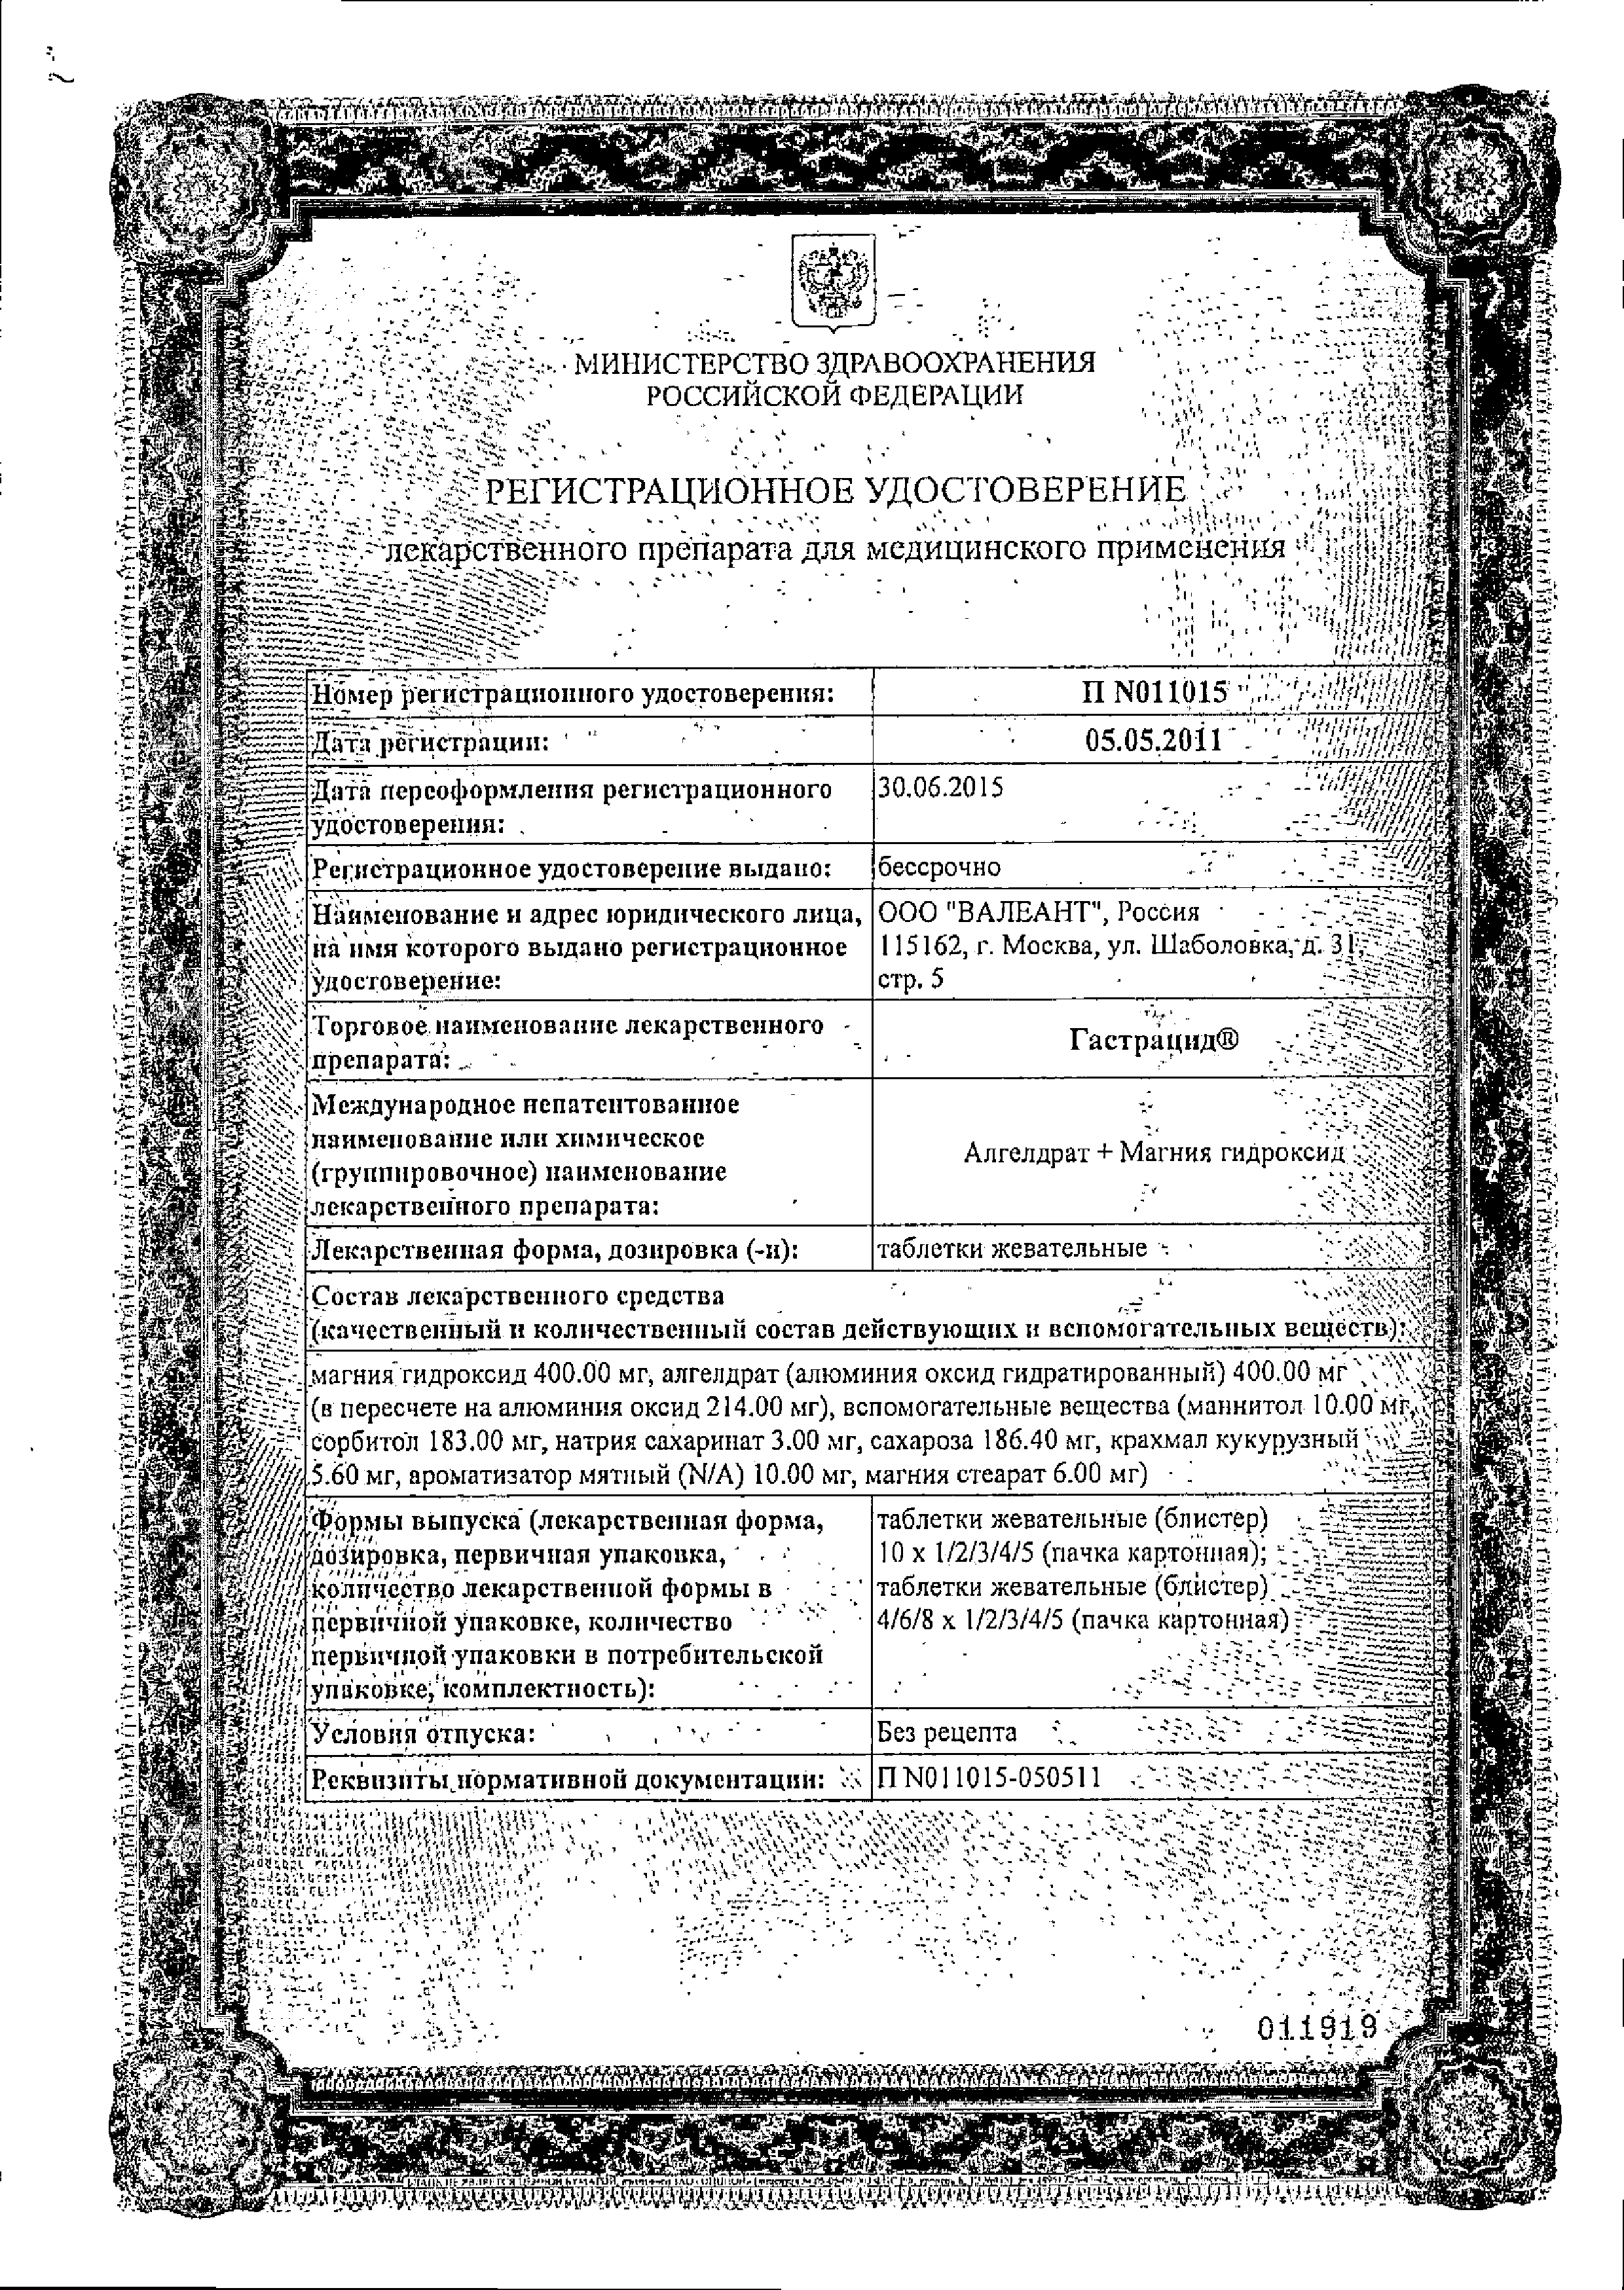 Гастрацид сертификат